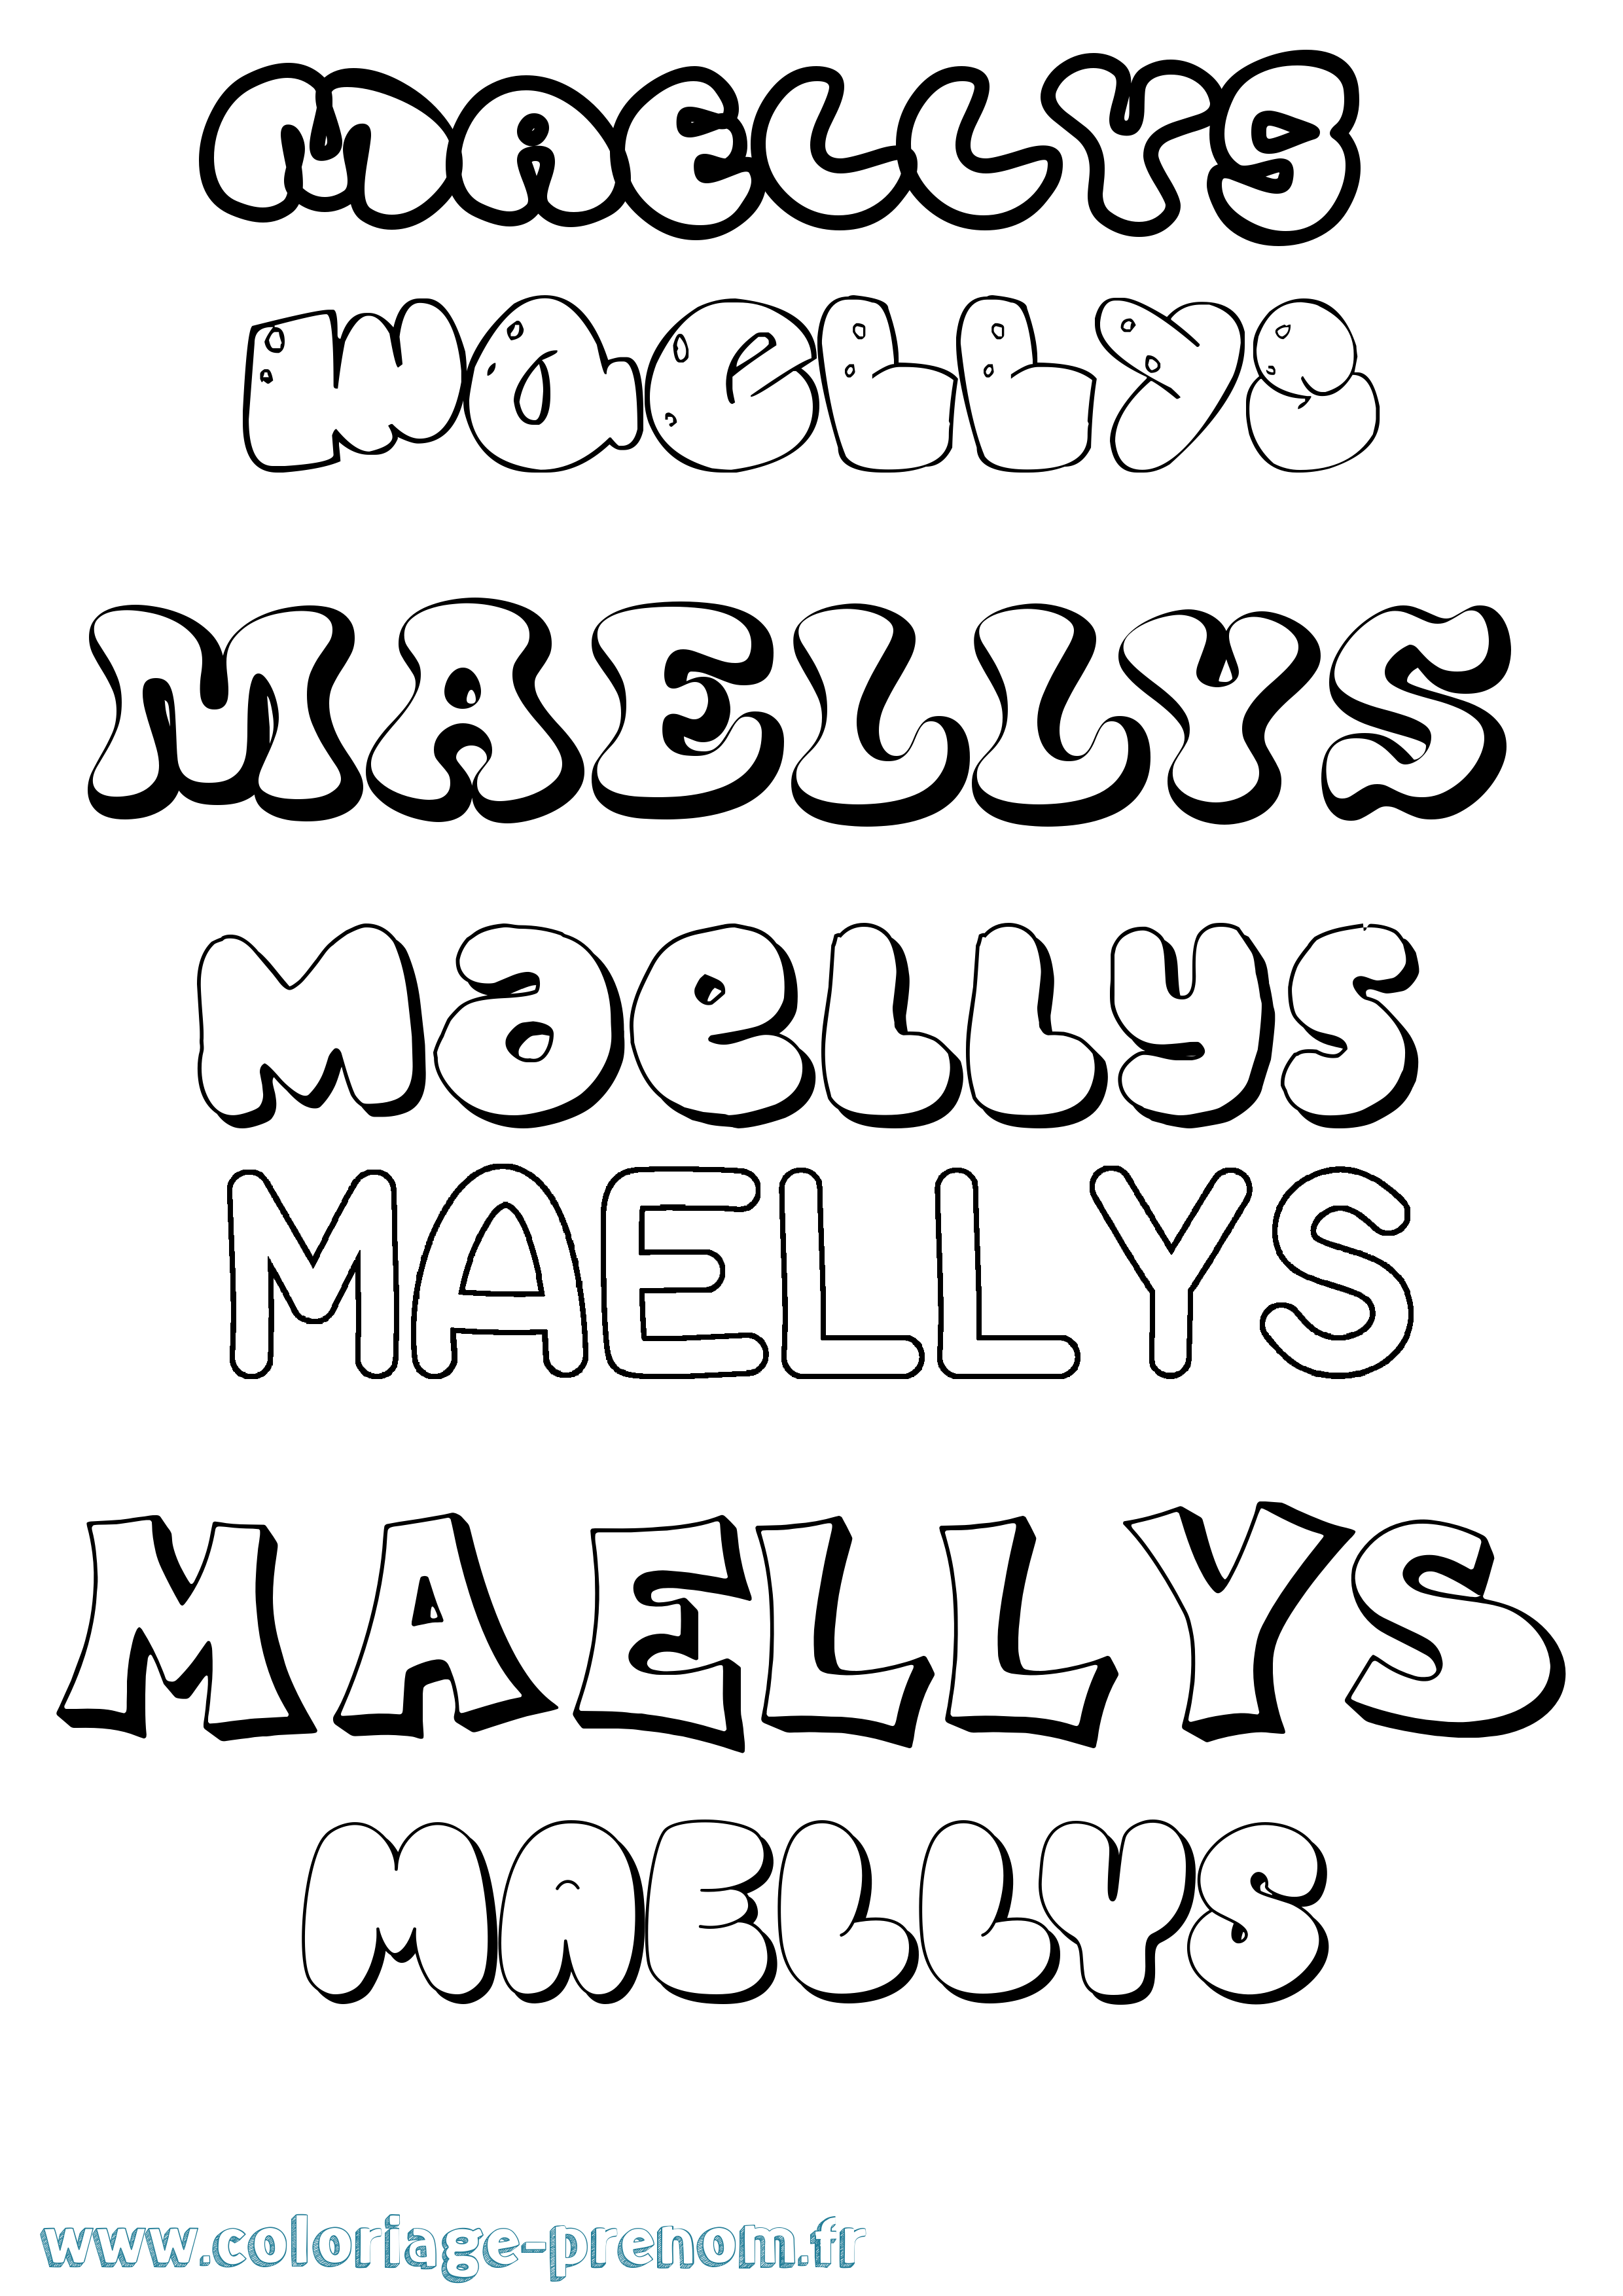 Coloriage prénom Maellys Bubble